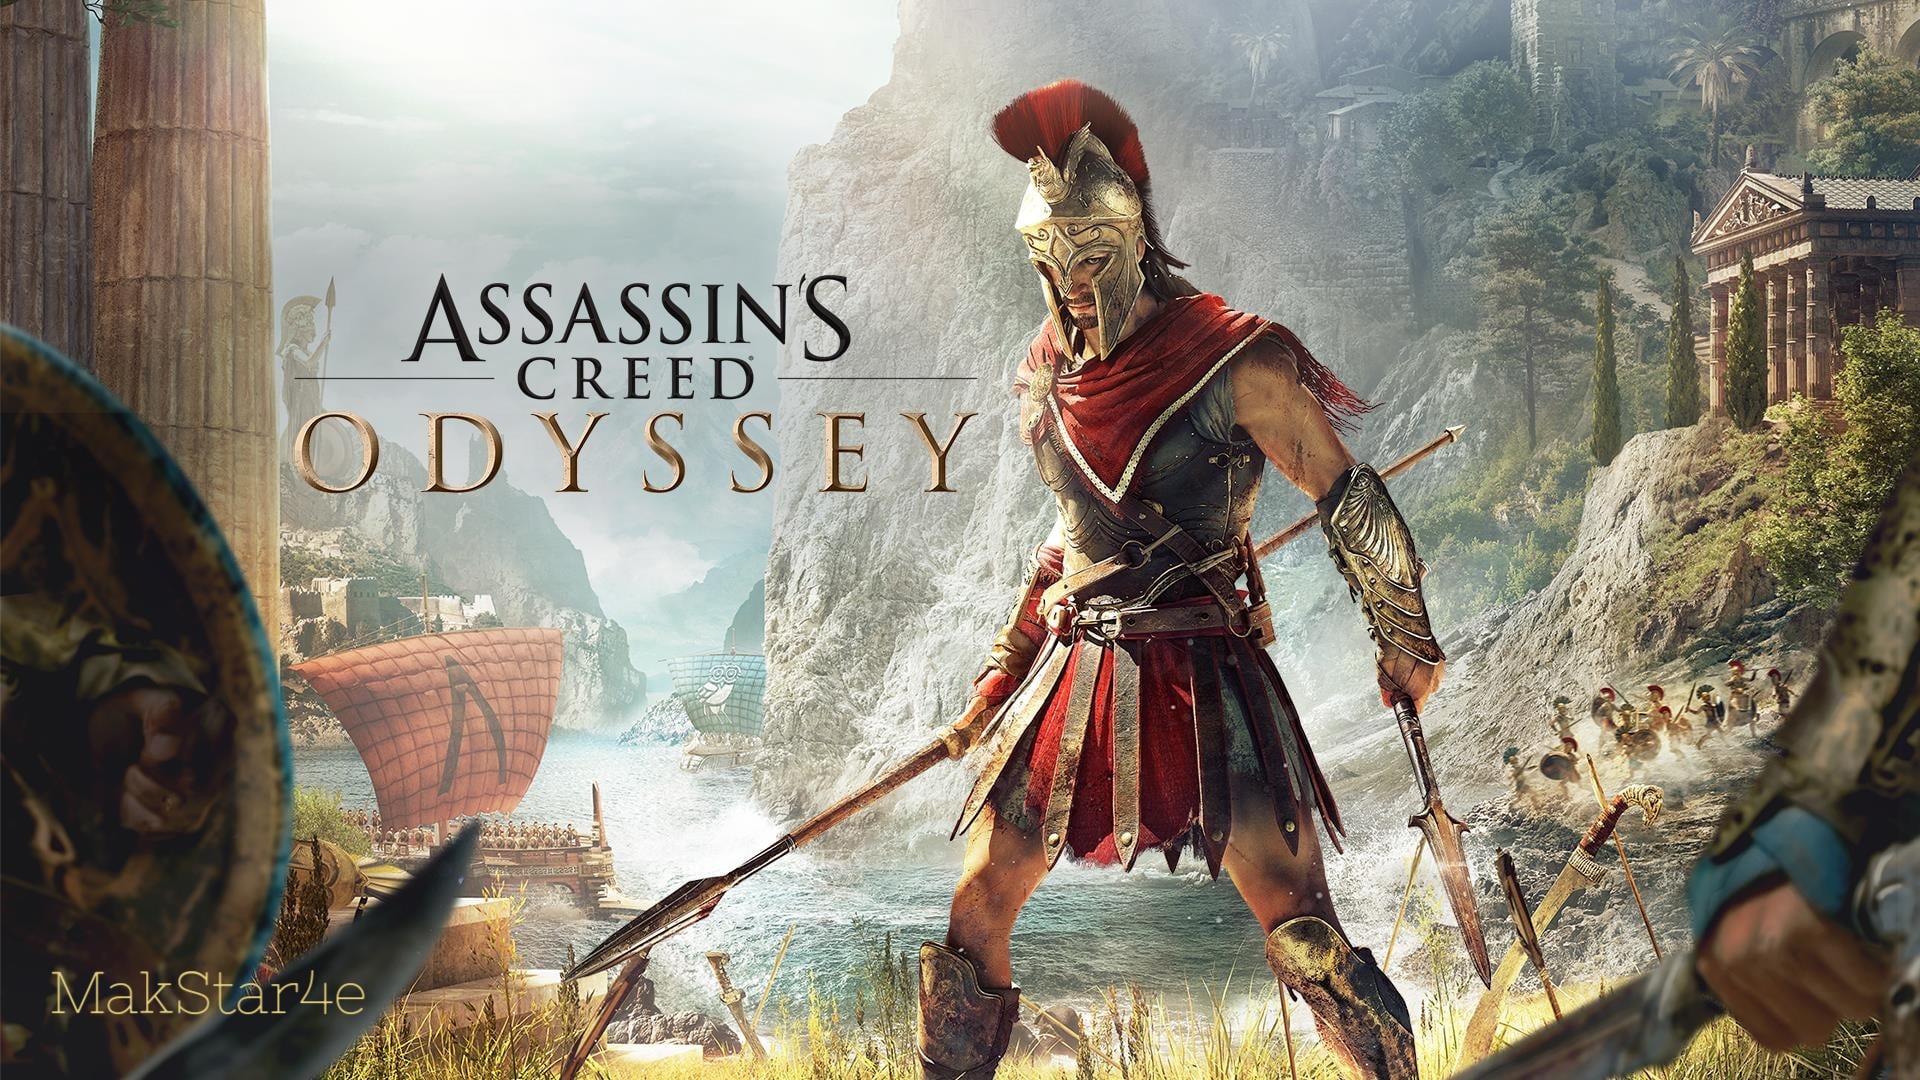 Assassin’s Creed Odyssey - Часть 14: Боги покинули нас